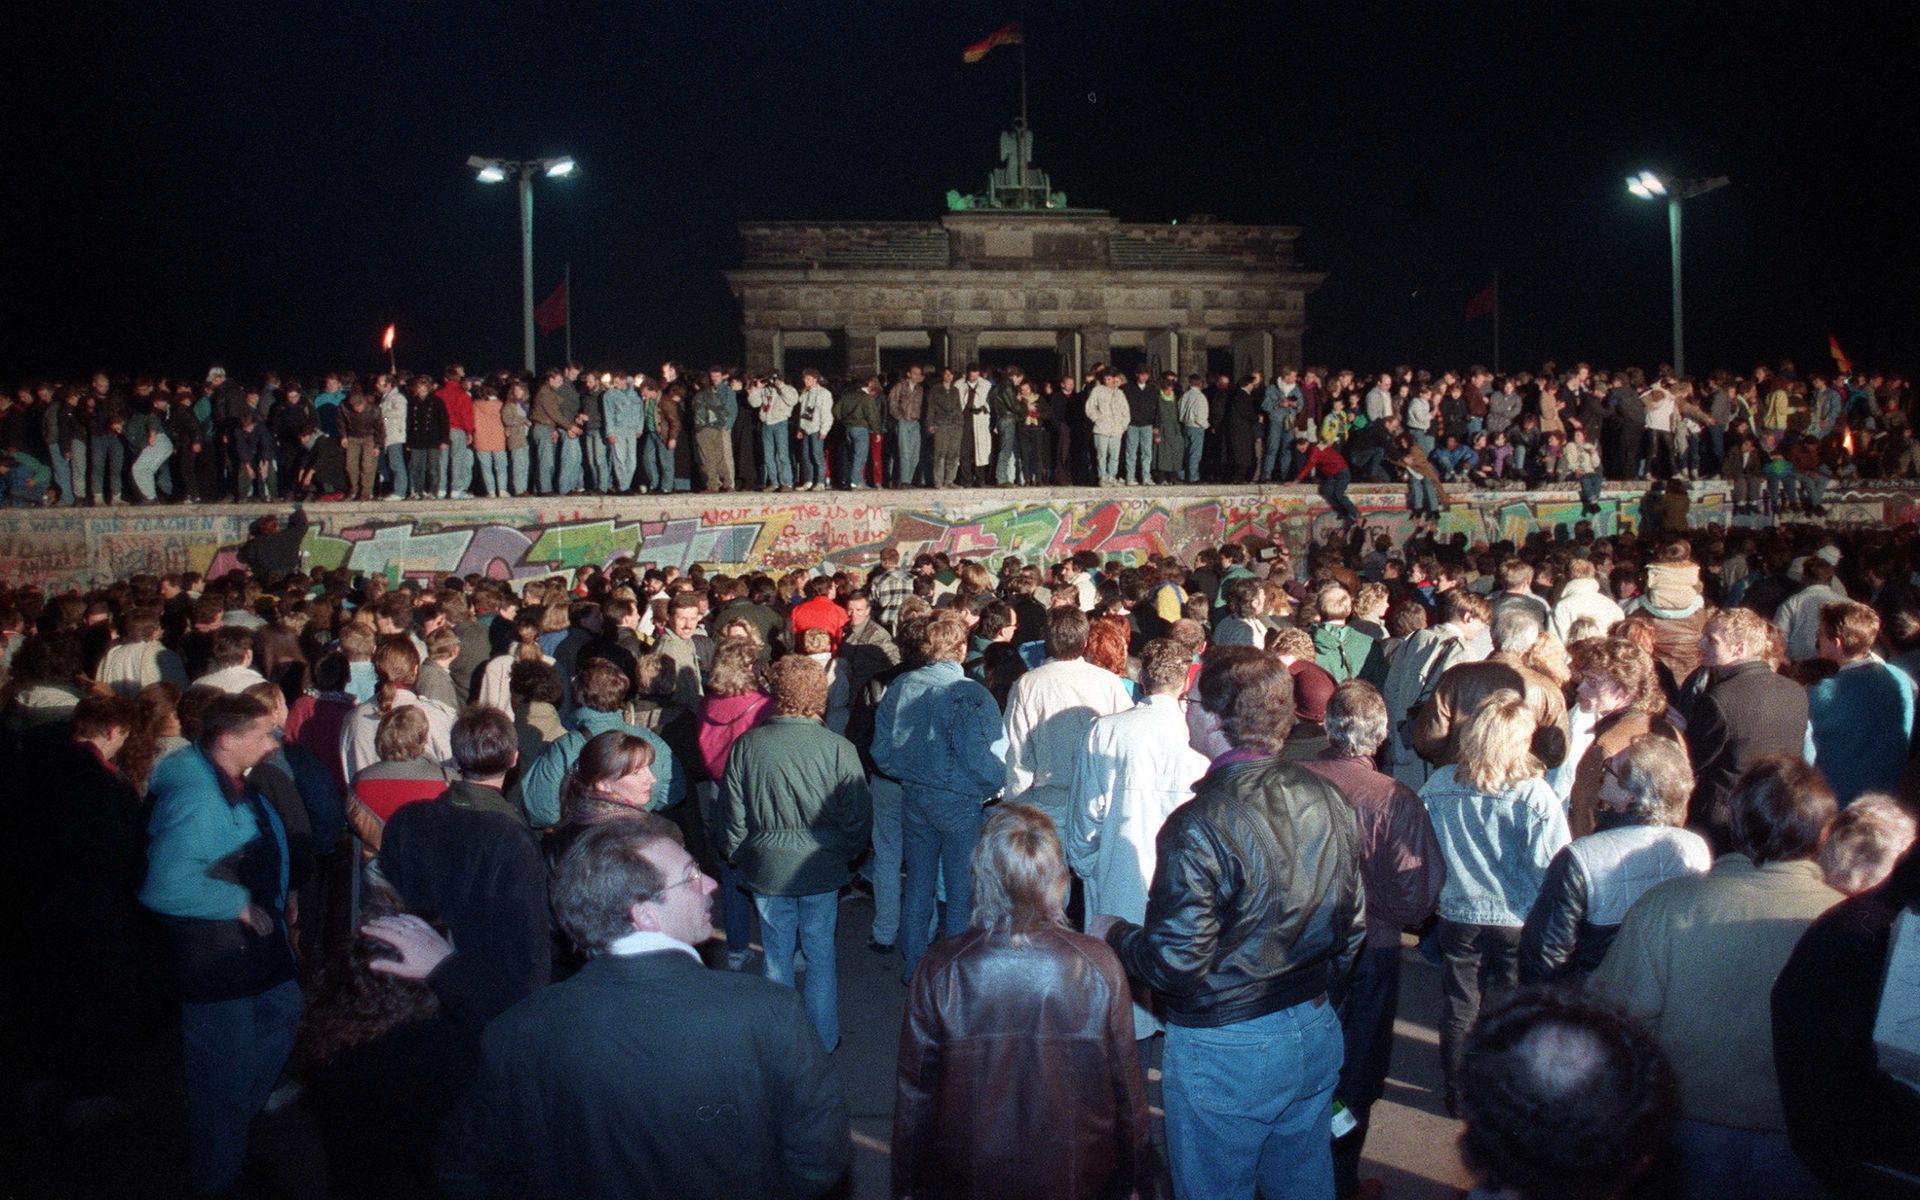 Tusentals människor samaldes vid Brandenburger Tor i Berlin när muren föll för 30 år sedan.